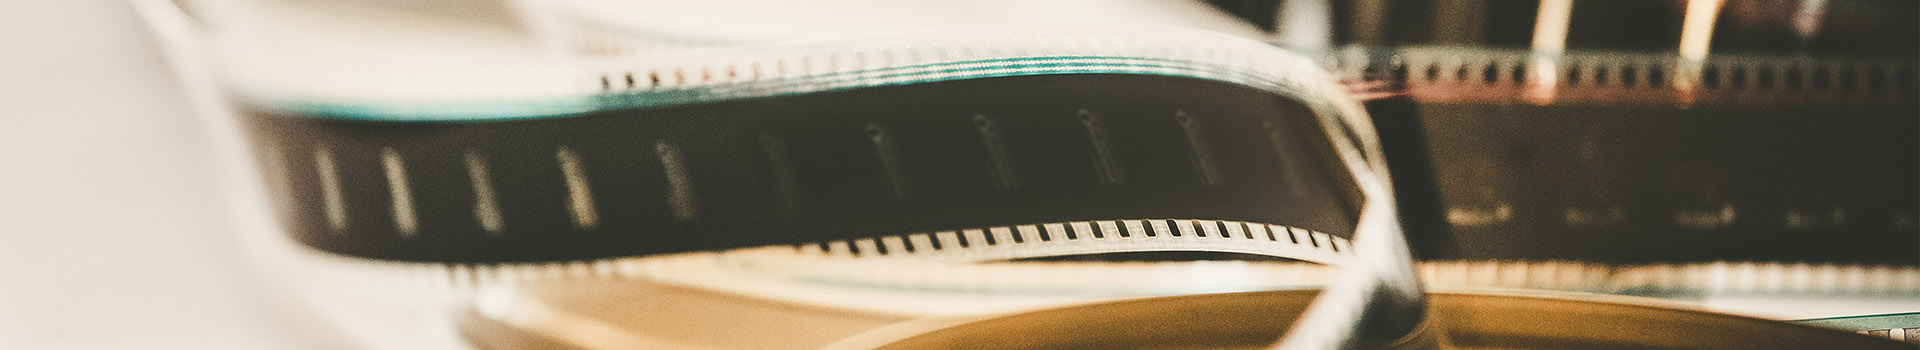 Gulungan film bioskop atau strip film, gambar close up